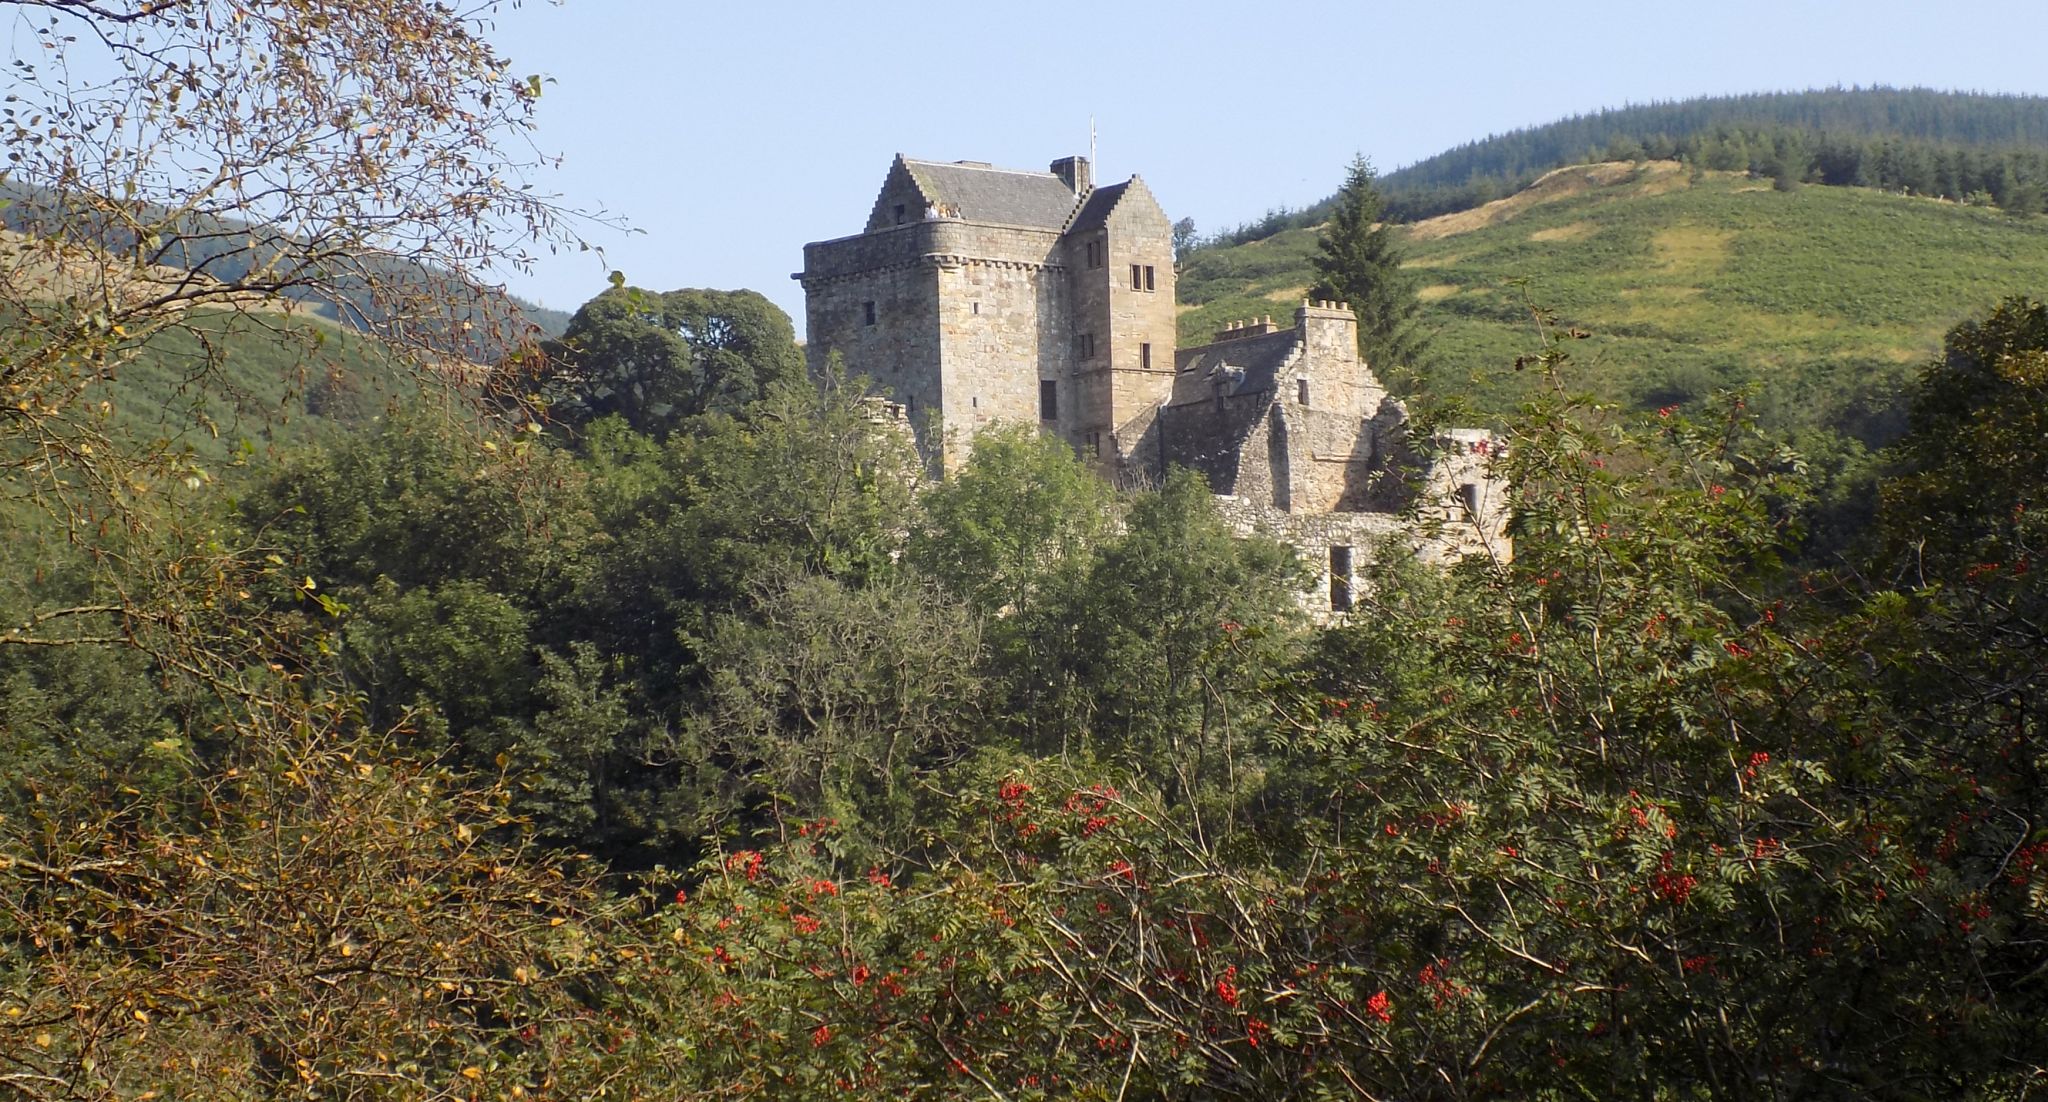 Castle Campbell ( Castle Gloom ) in Dollar Glen beneath the Ochil Hills